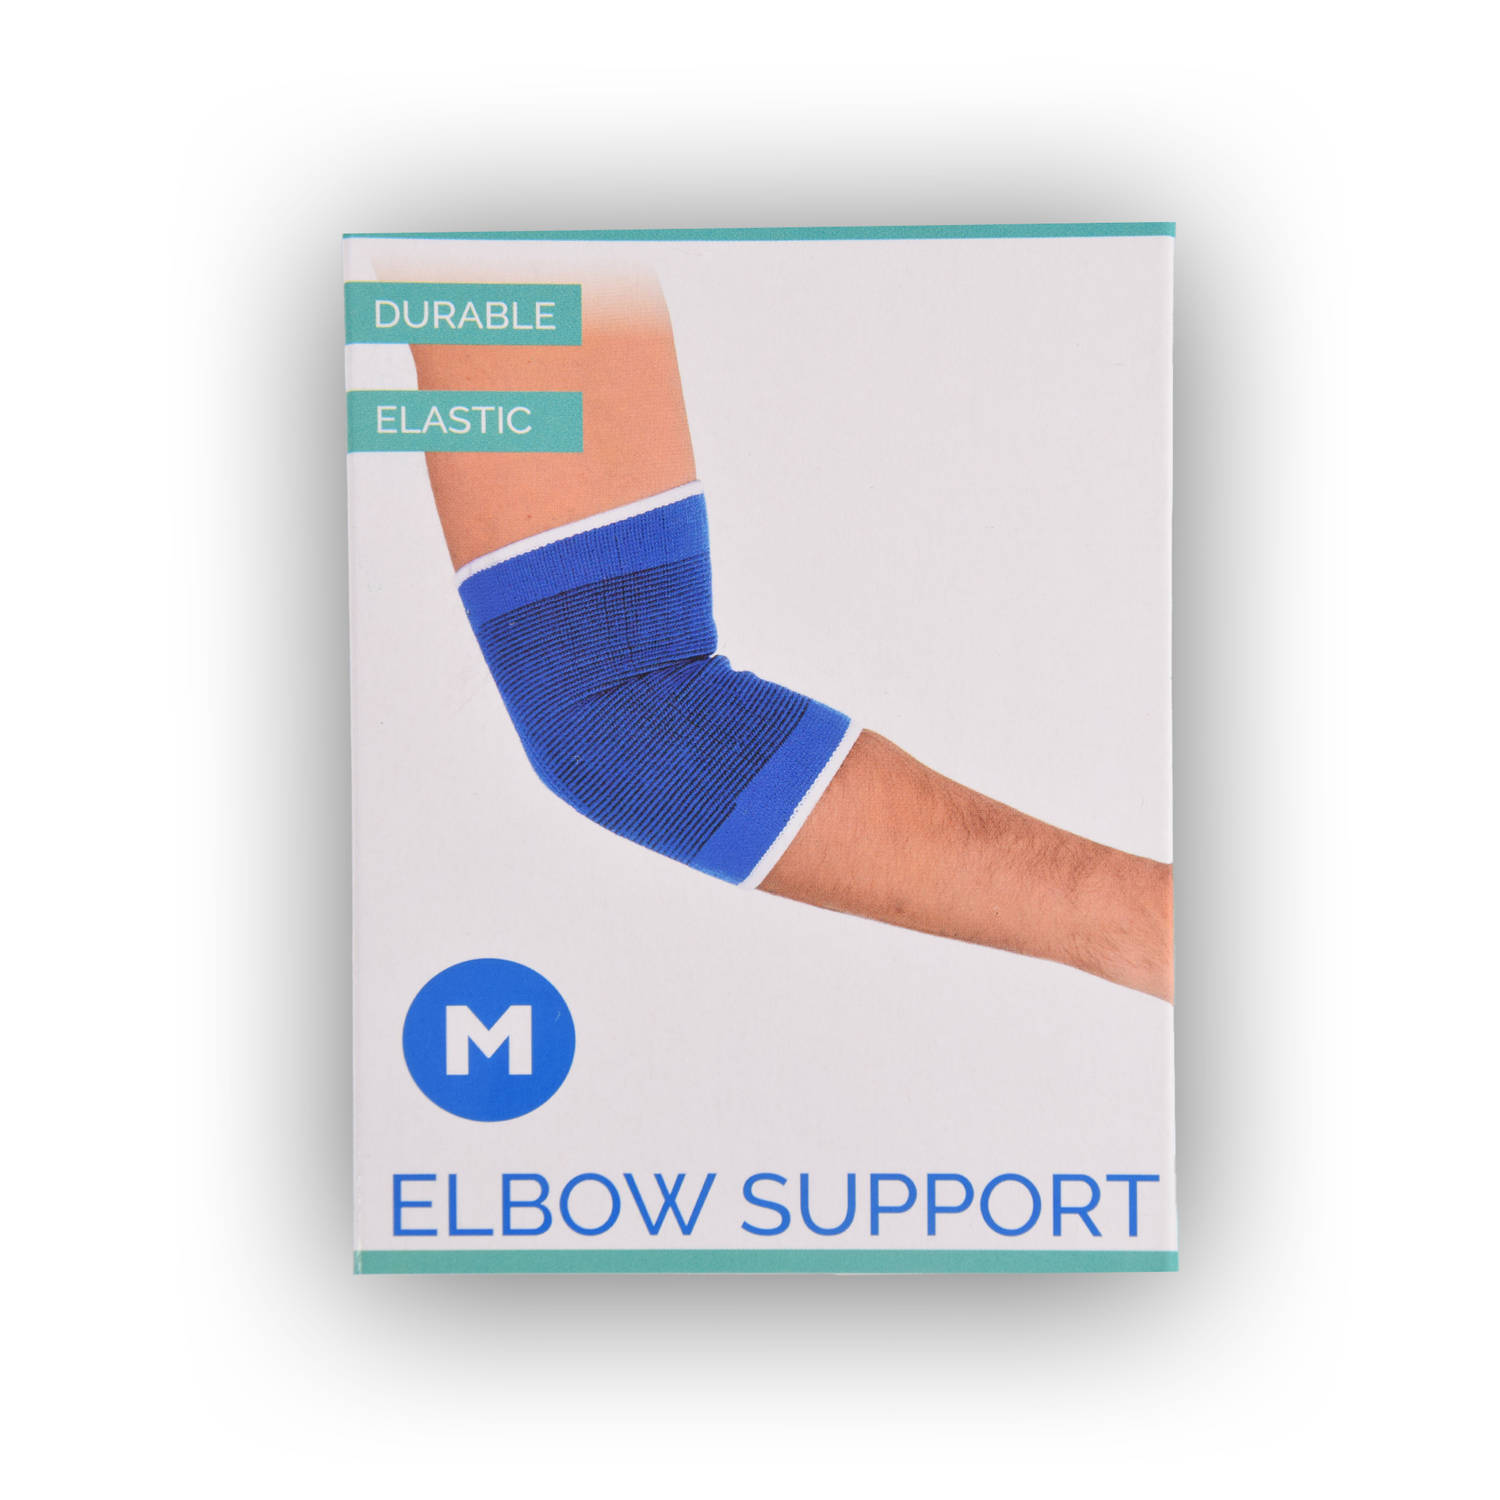 Elleboogbraces Maat M - Geavanceerde Elleboogsteunband & Elbow Sleeve | Premium Armbraces met Elbow Support | Perfect voor Herstel & Sport | Duurzame Elleboogbandage